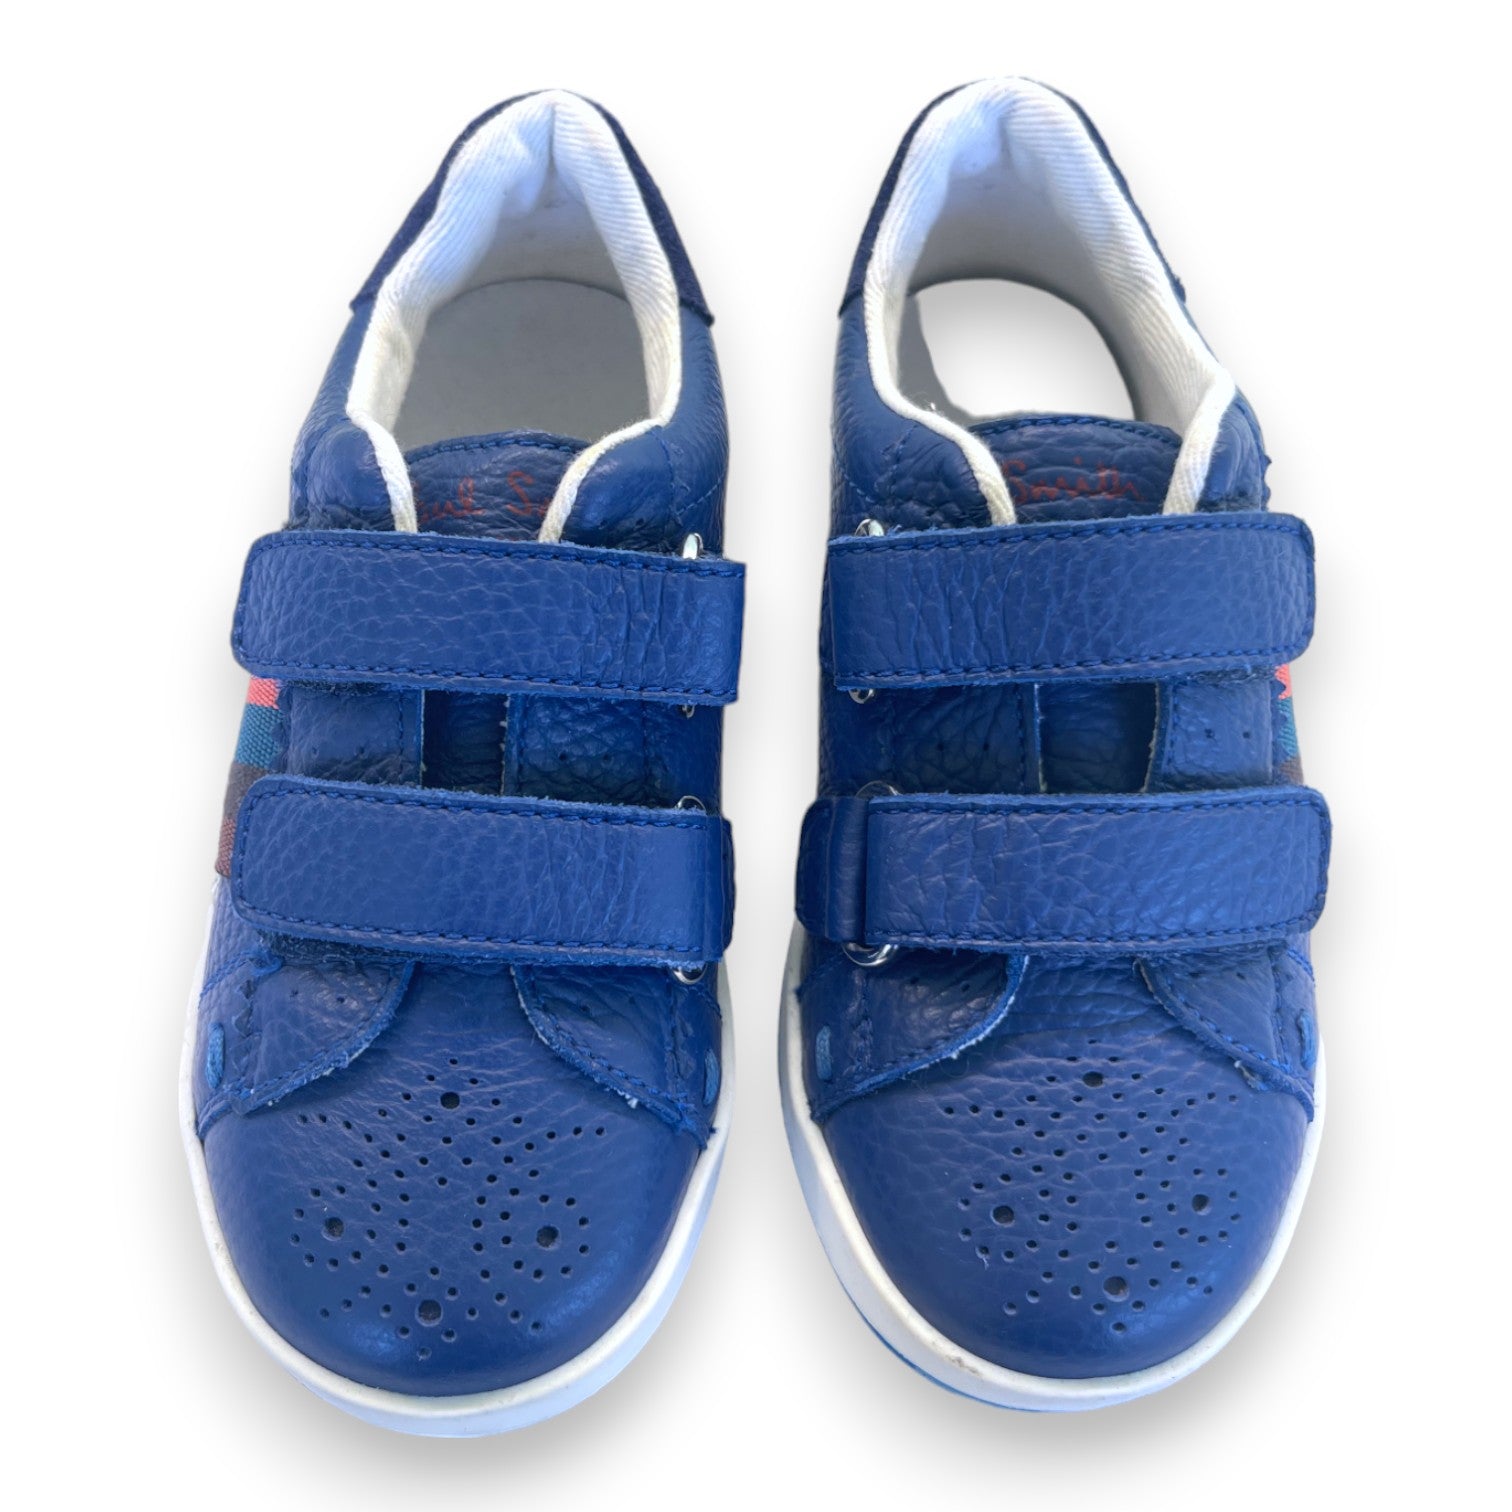 PAUL SMITH - Baskets cuir bleu marine bandes colorées - 26